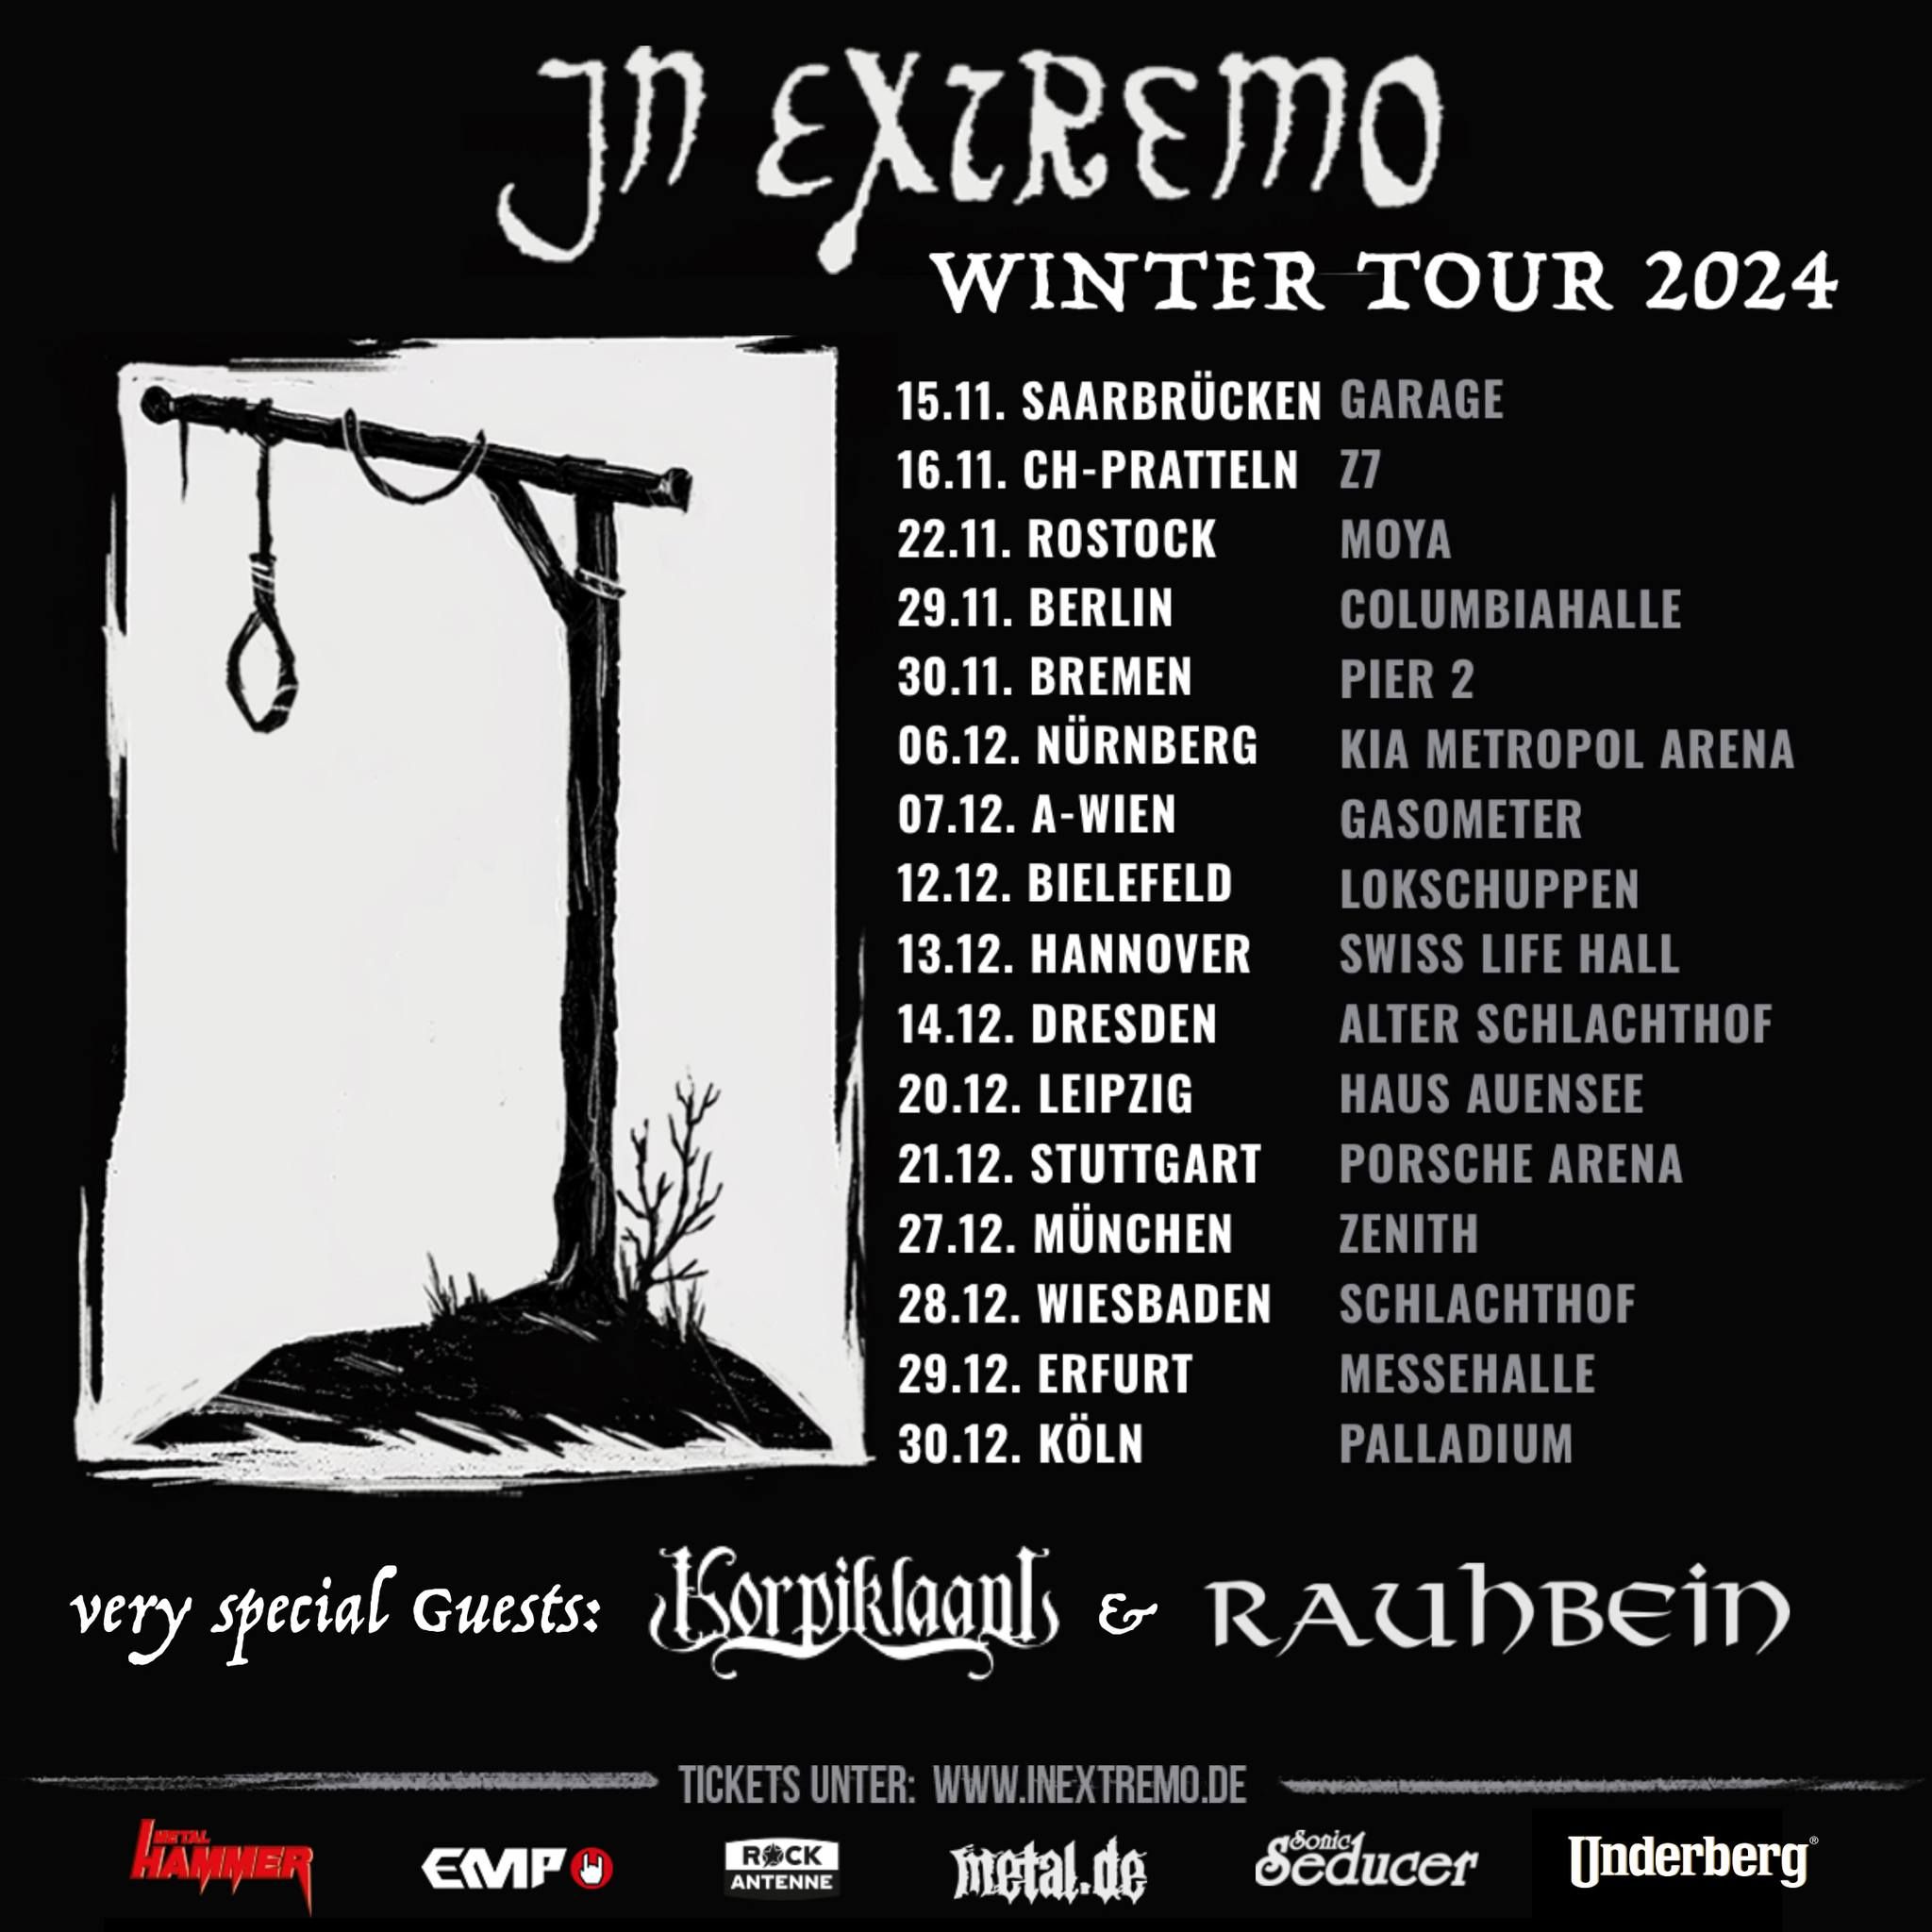 "Winter Tour" von 2023 nach 2024 verlegt